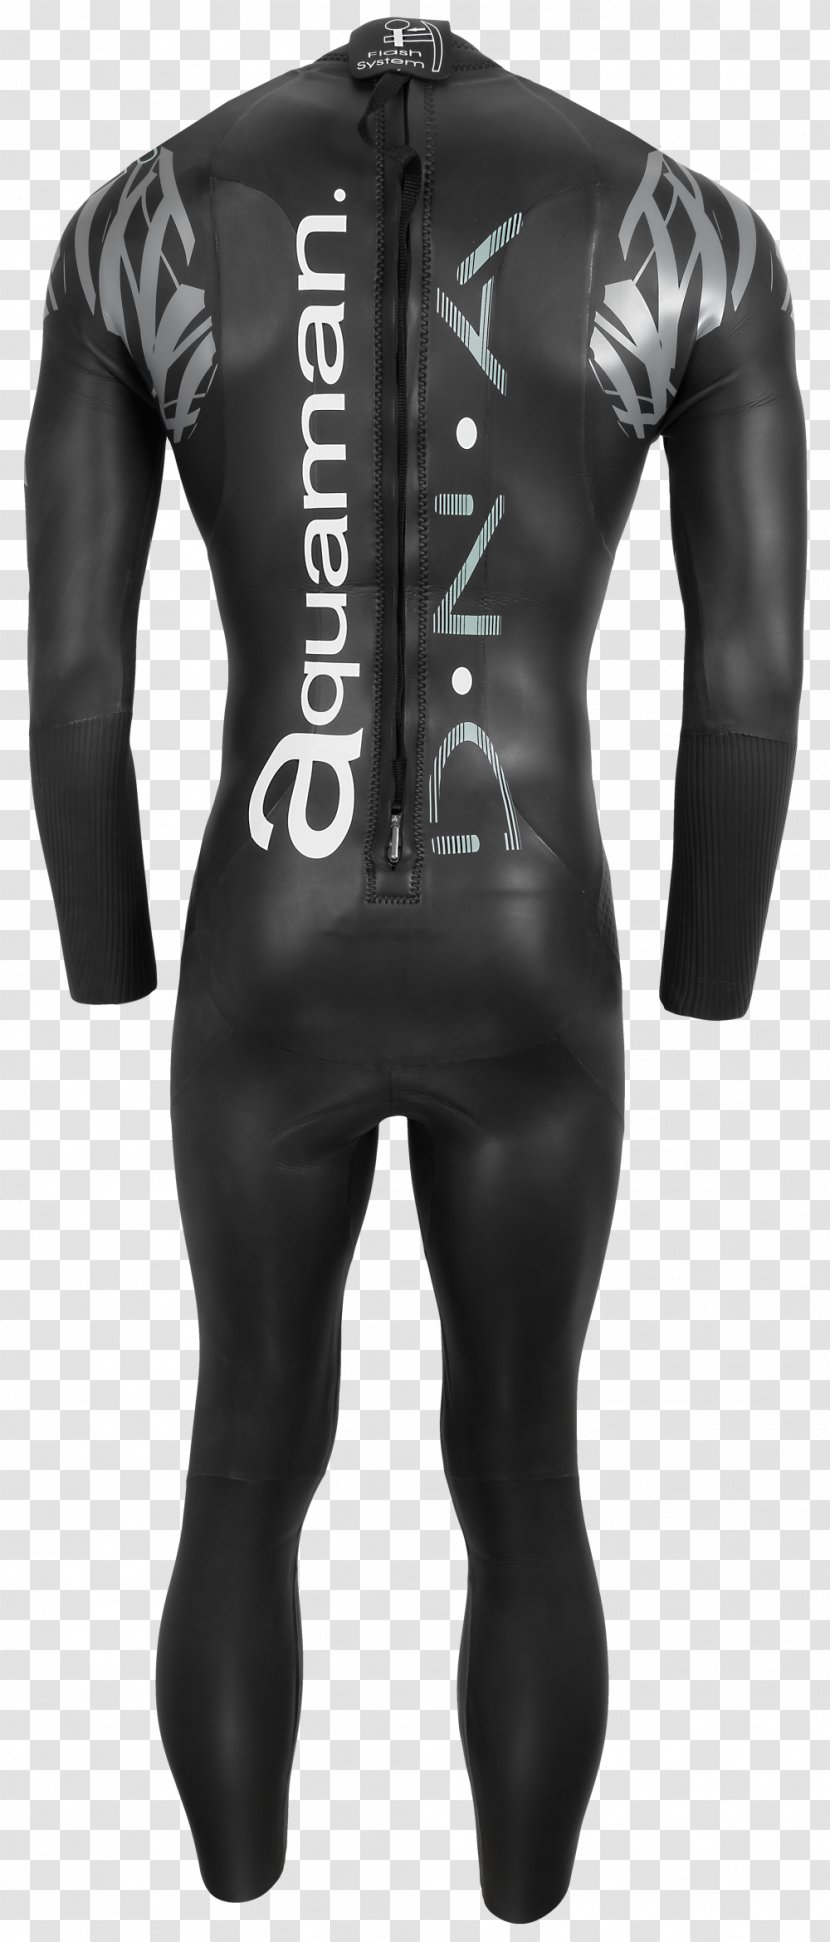 Wetsuit - Frame - Sport Suit Transparent PNG